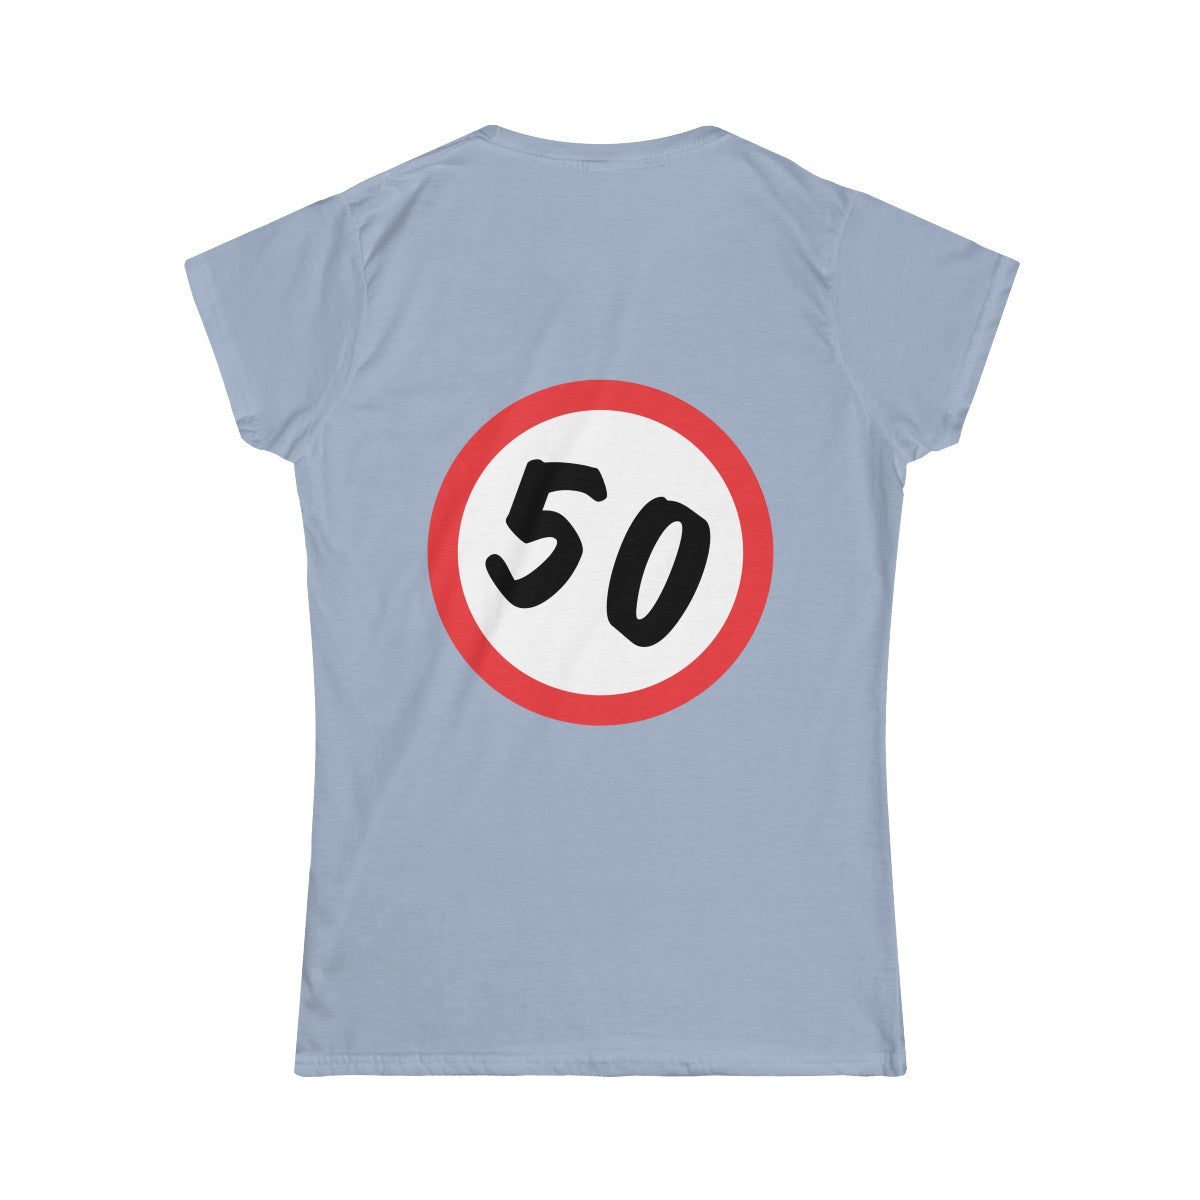 T-Shirt 50, Sarah, Jarige Job, birthday - Scattando Verkleedhuis